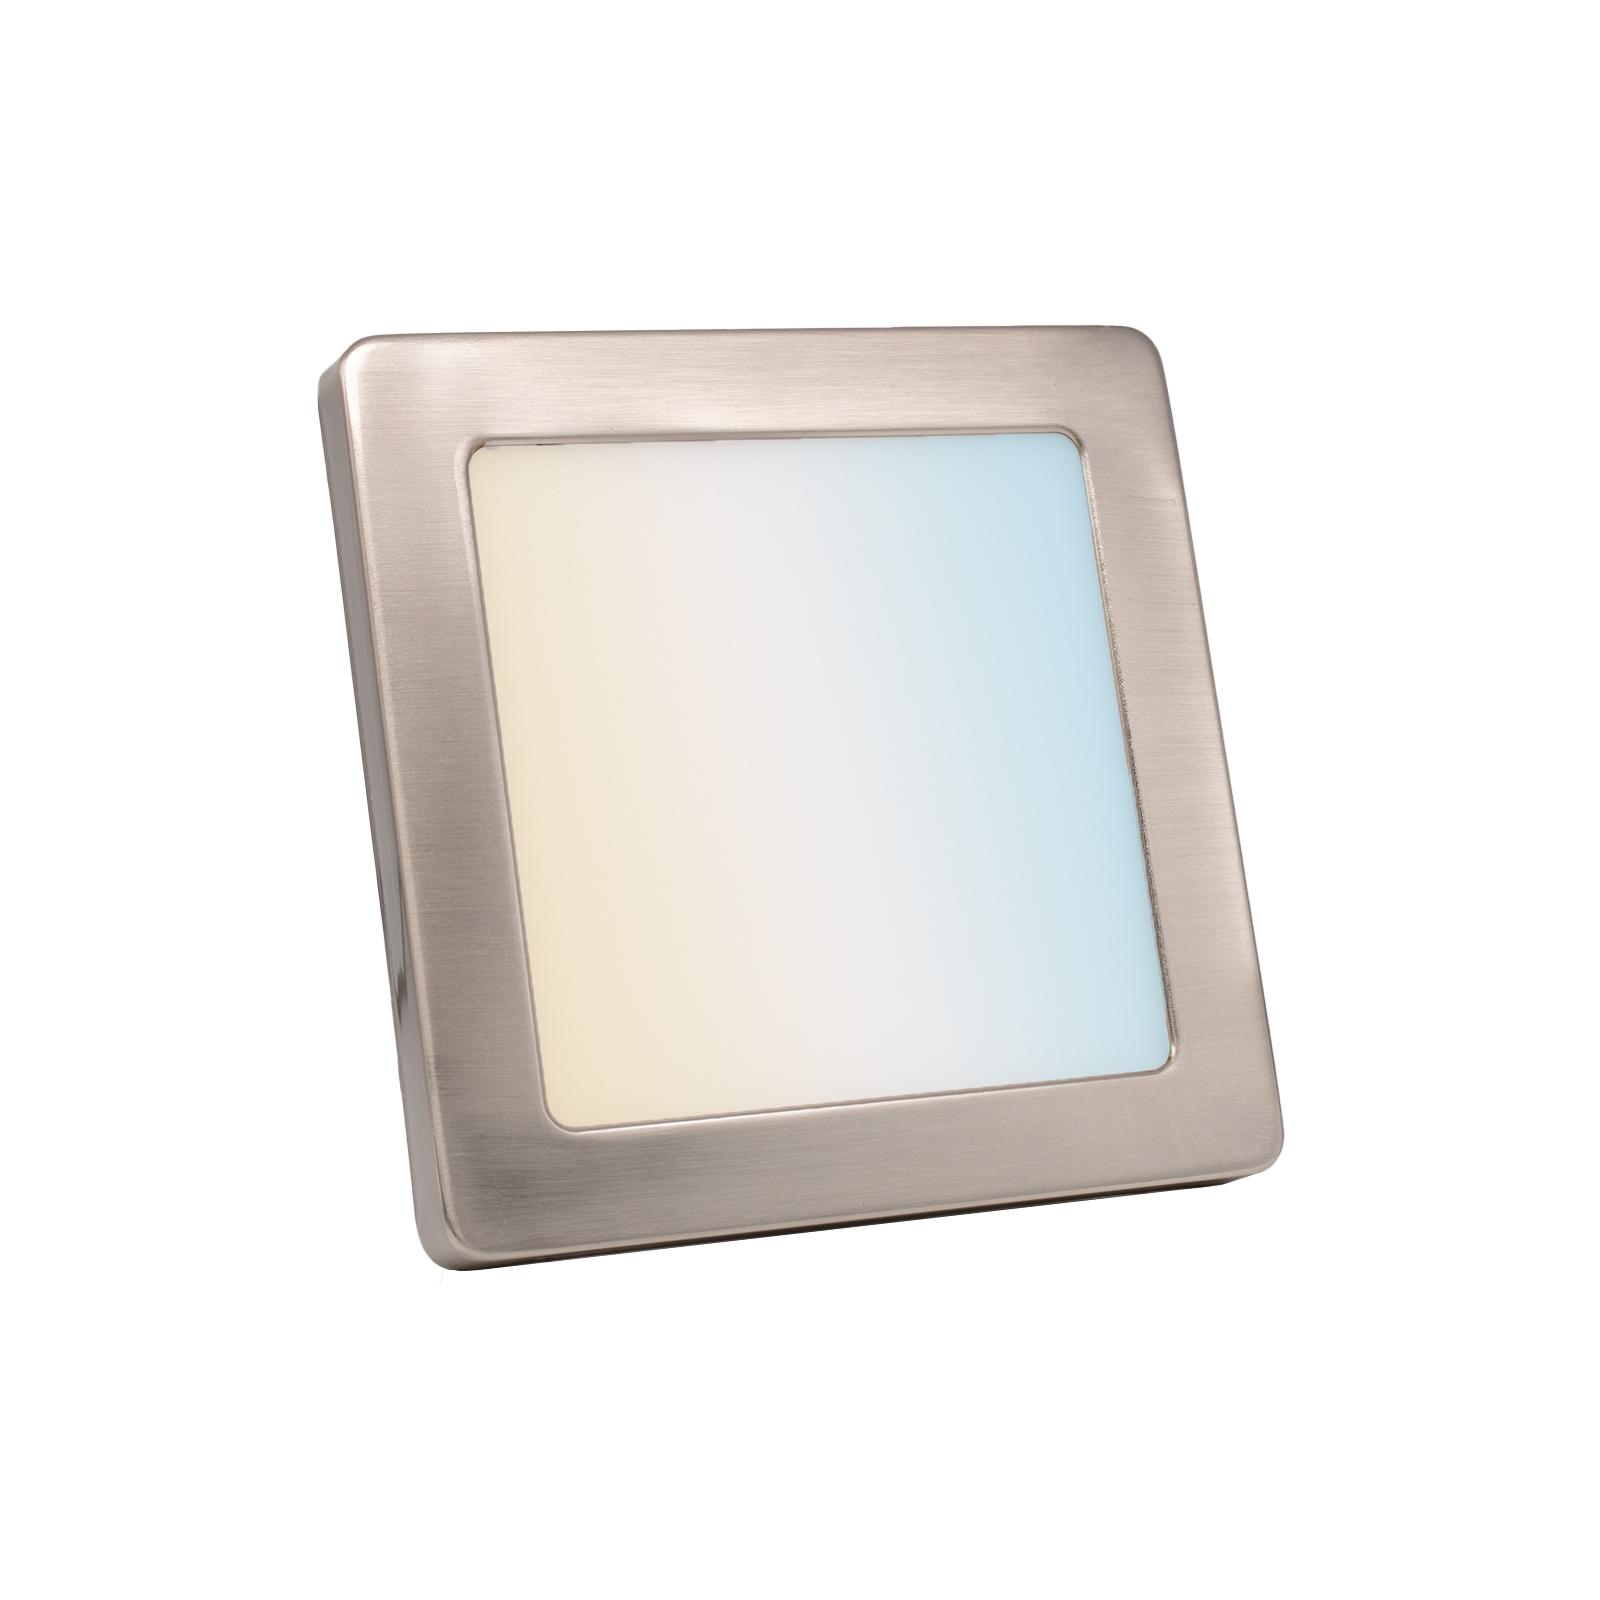 CCT LED Ein-Aufbaustrahler eckig silber 12W 165x165 mit Silber-farbigen Abdeckring